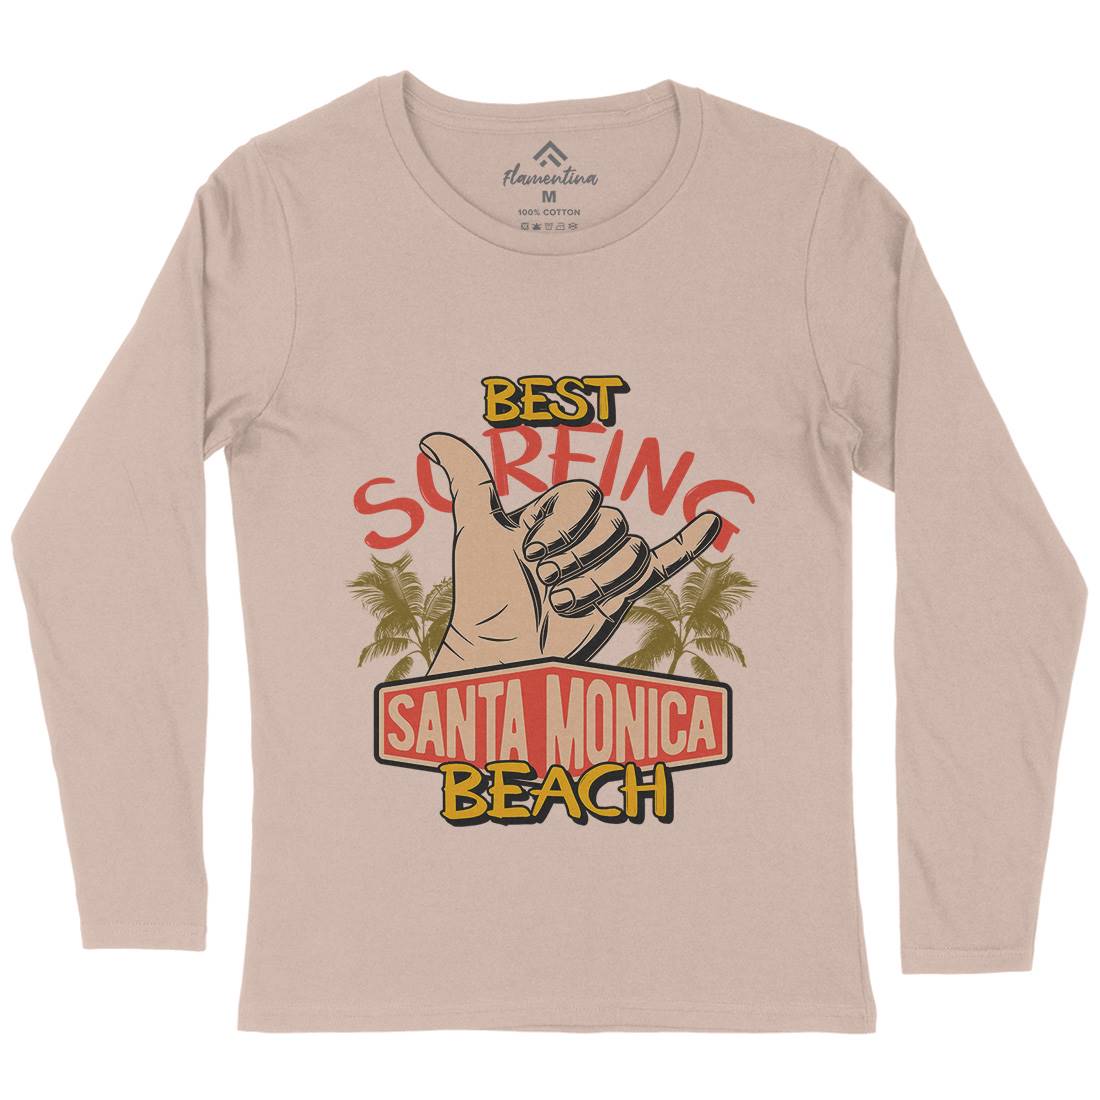 Best Surfing Beach Womens Long Sleeve T-Shirt Surf D909